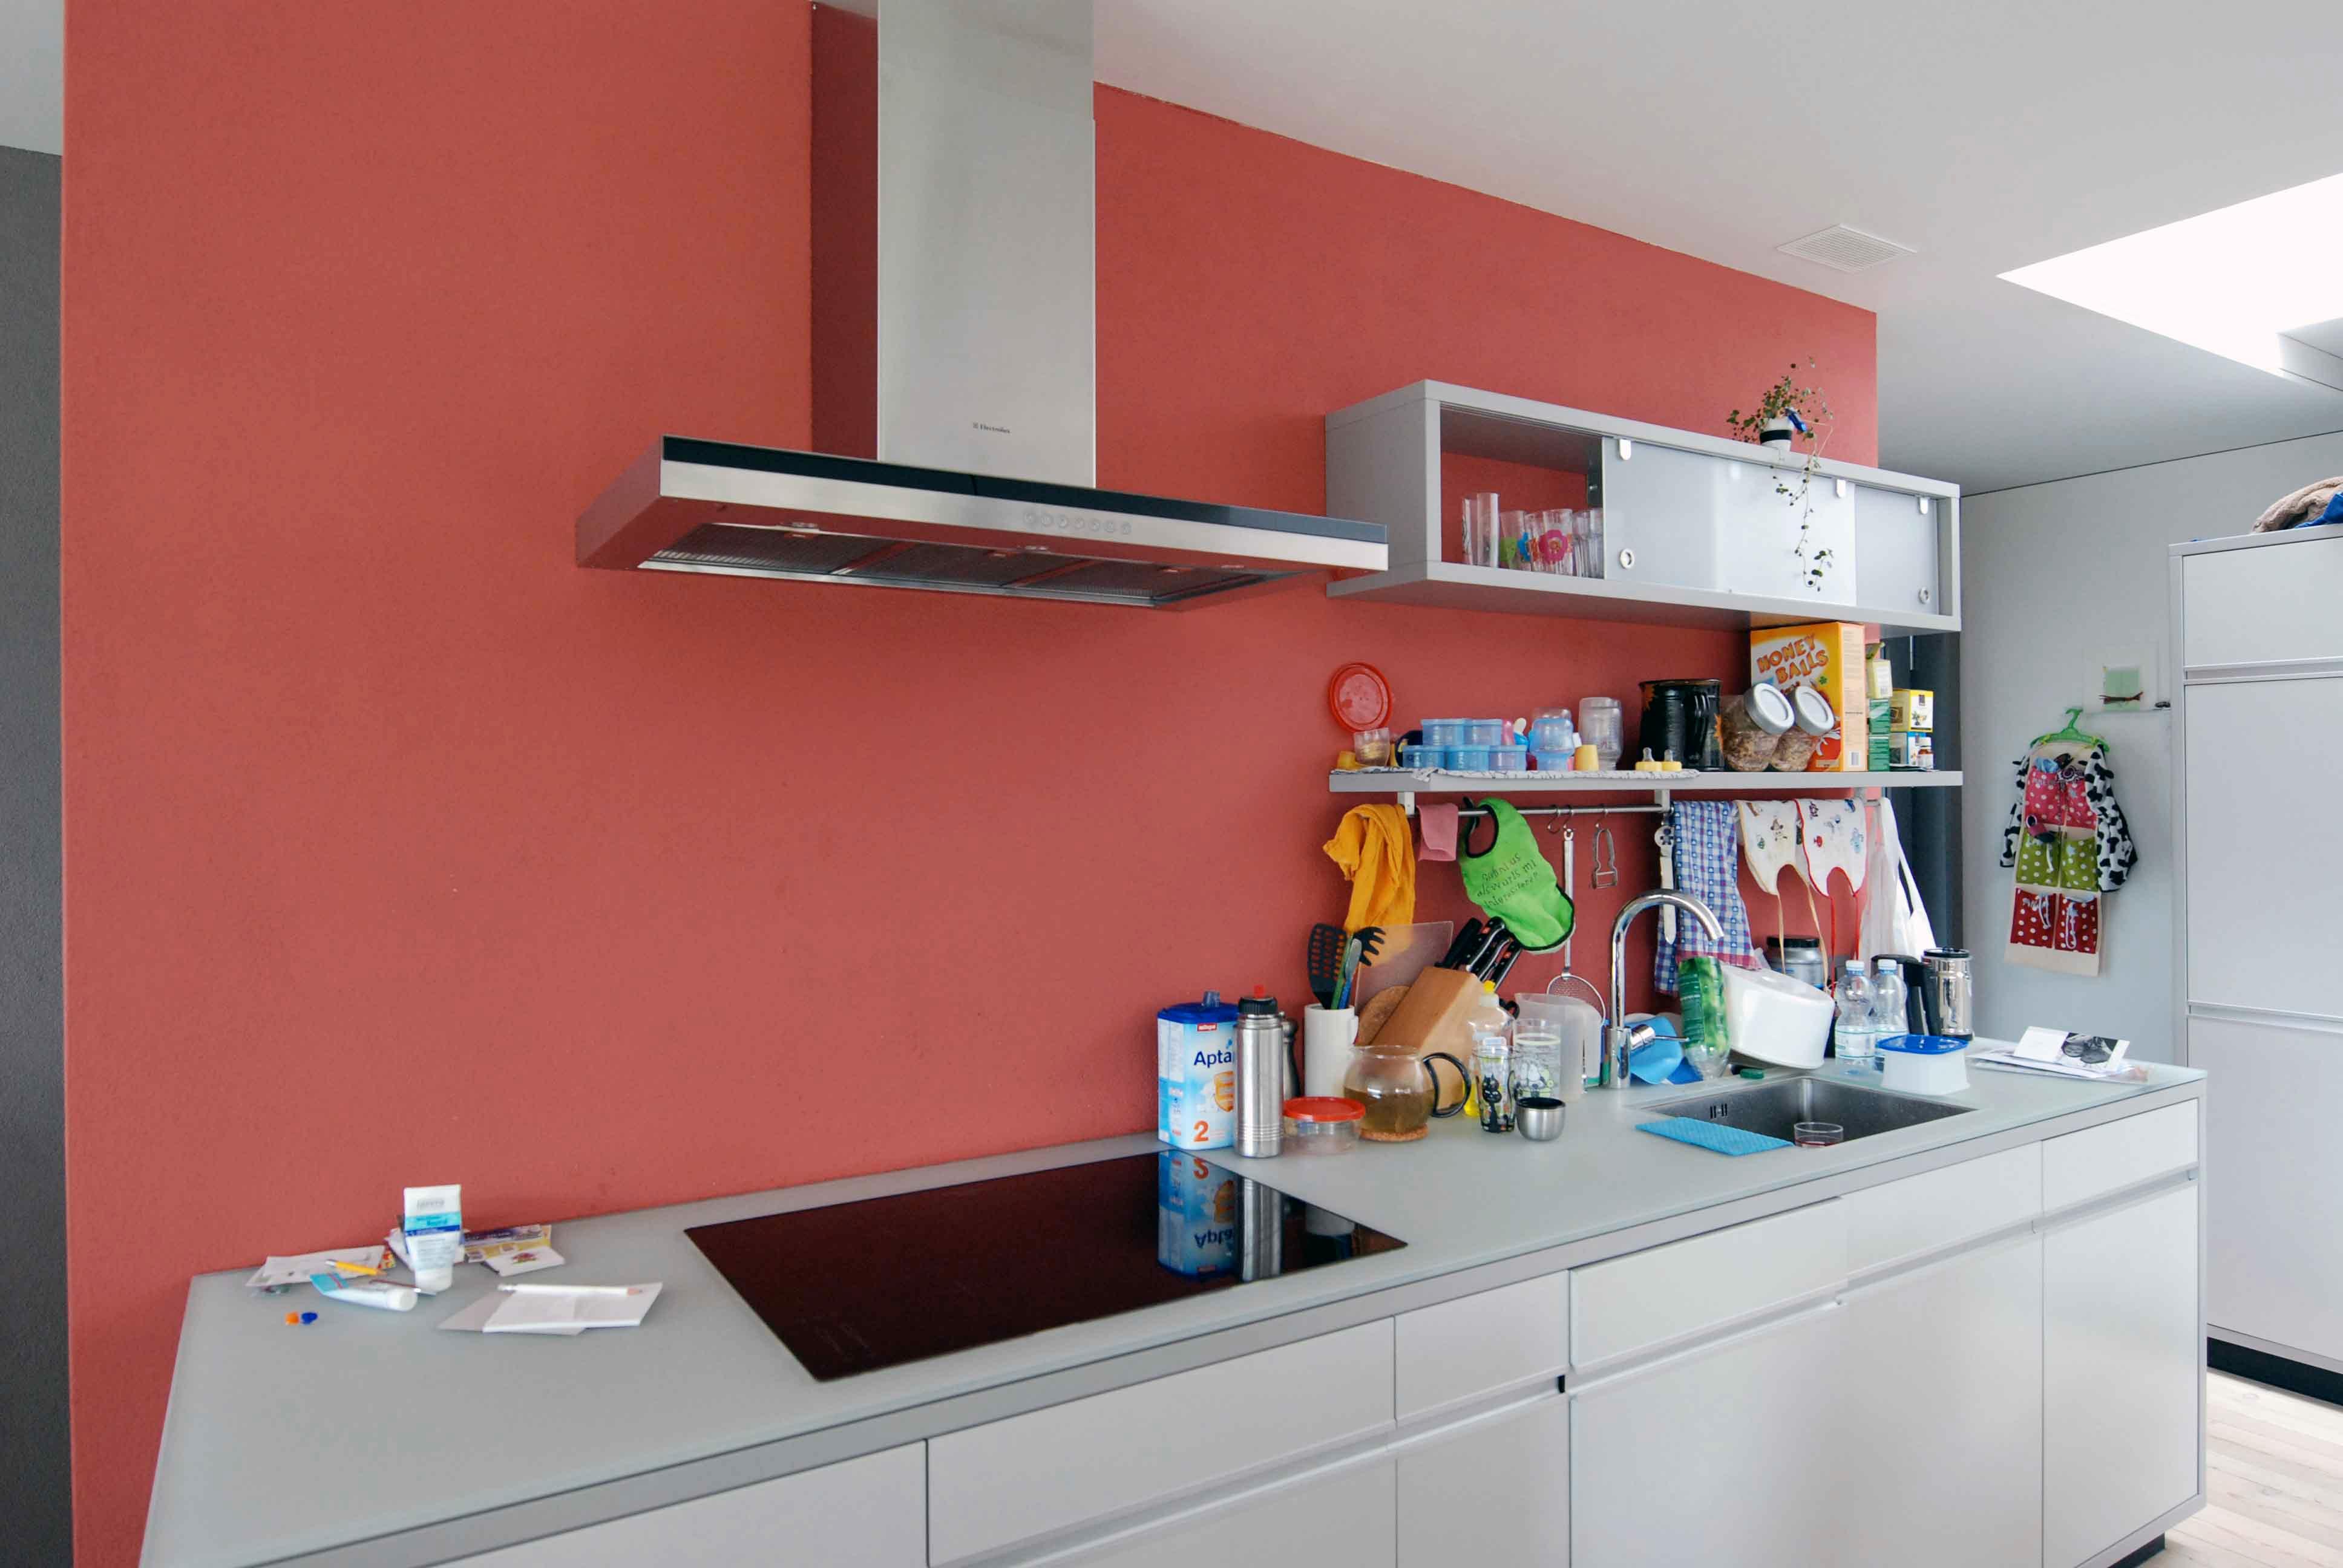 Architektur-Reportage Münsigen Niggli Luder: rote Wand in der Küche passt ins Farbkonzept